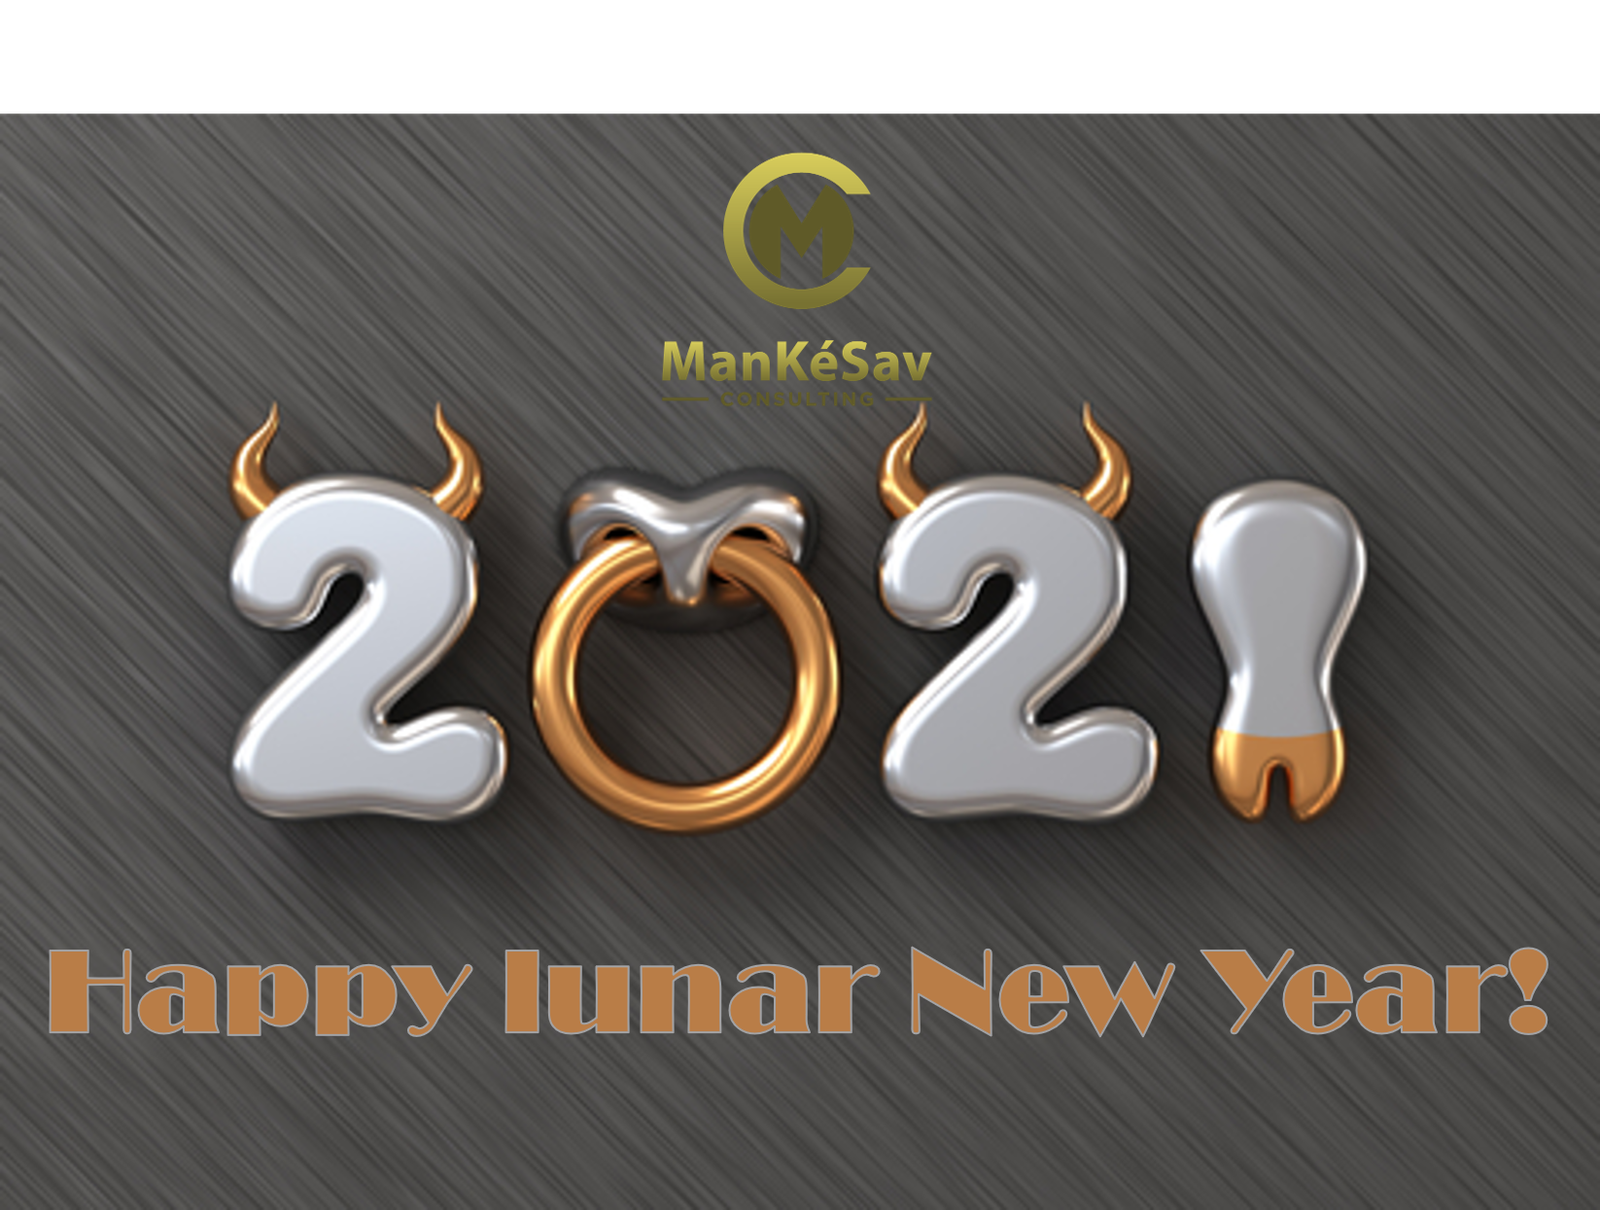 Happy lunar new year